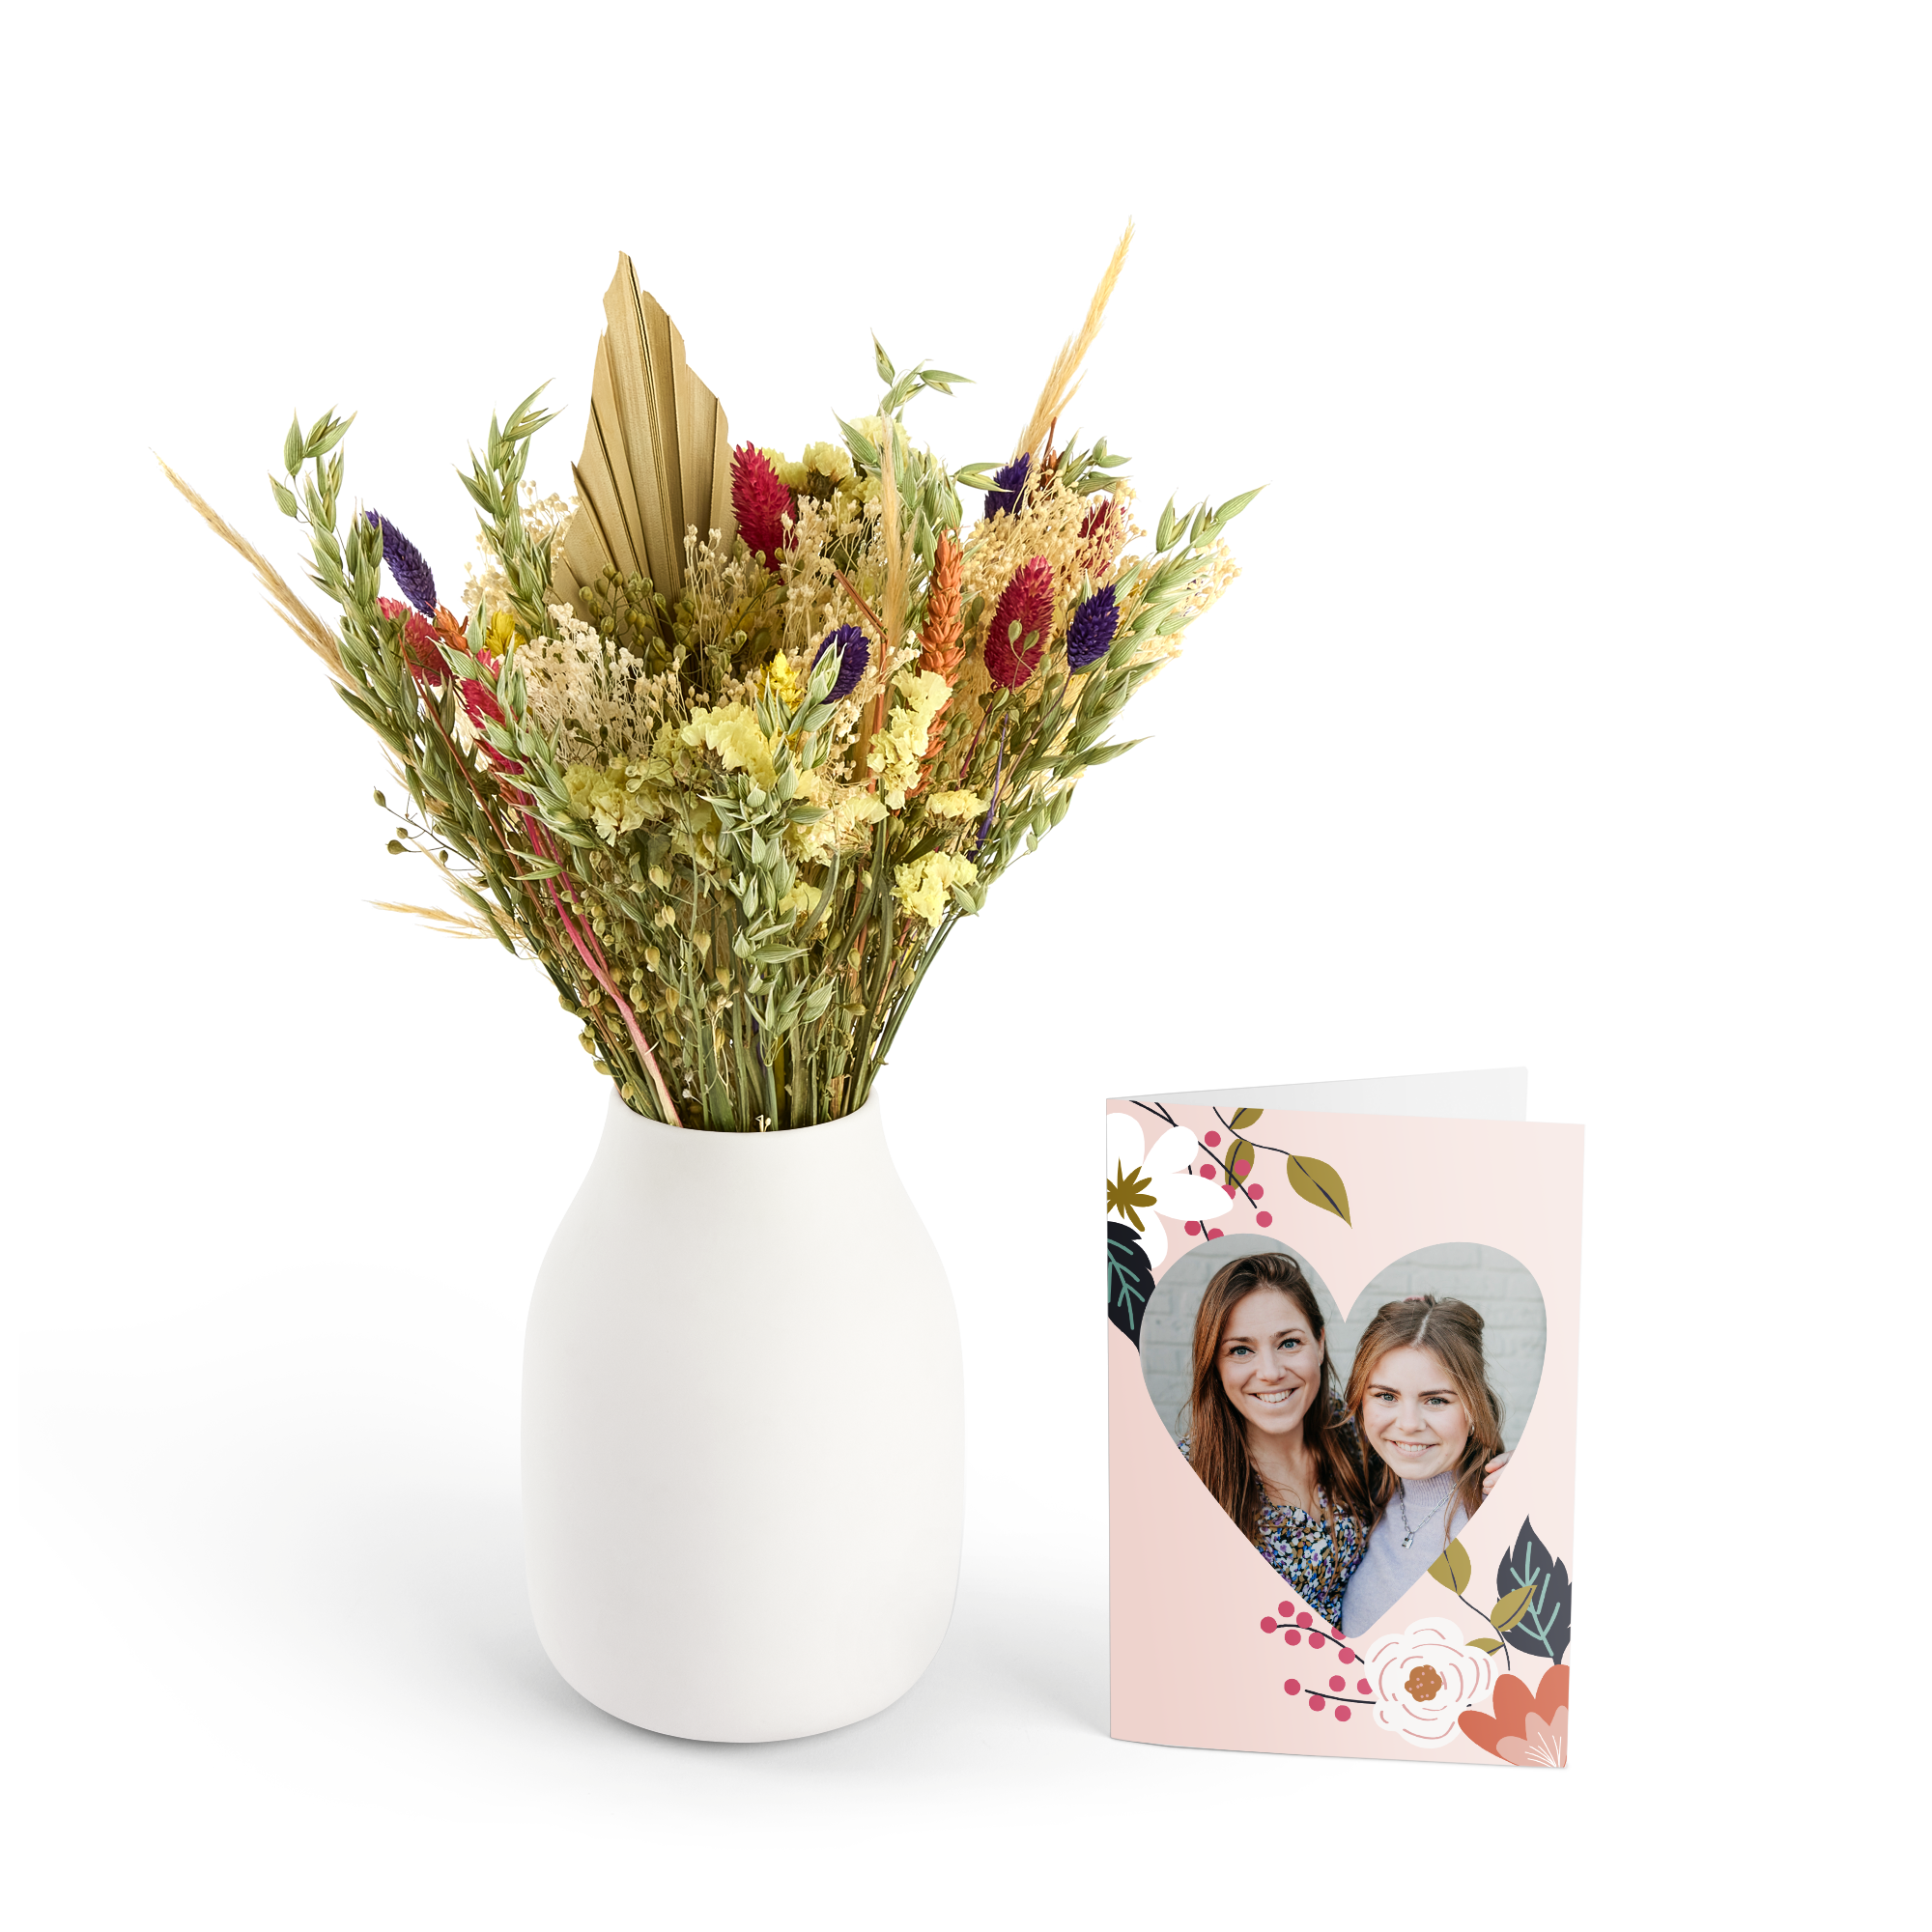 Kytice sušených květin s personalizovaným přáním - Barevná